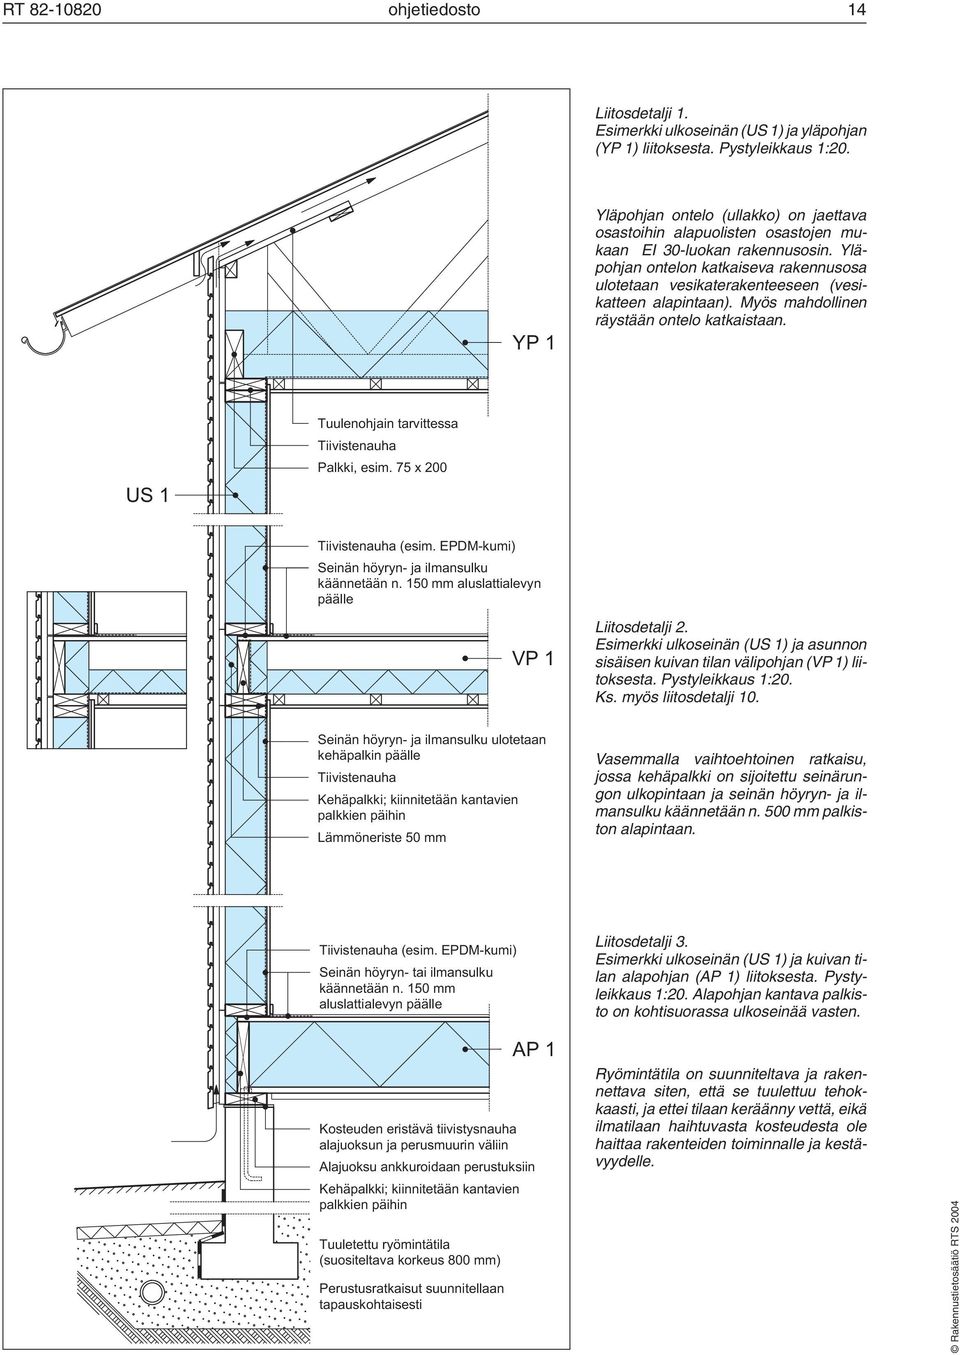 Yläpohjan ontelon katkaiseva rakennusosa ulotetaan vesikaterakenteeseen (vesikatteen alapintaan). Myös mahdollinen räystään ontelo katkaistaan.